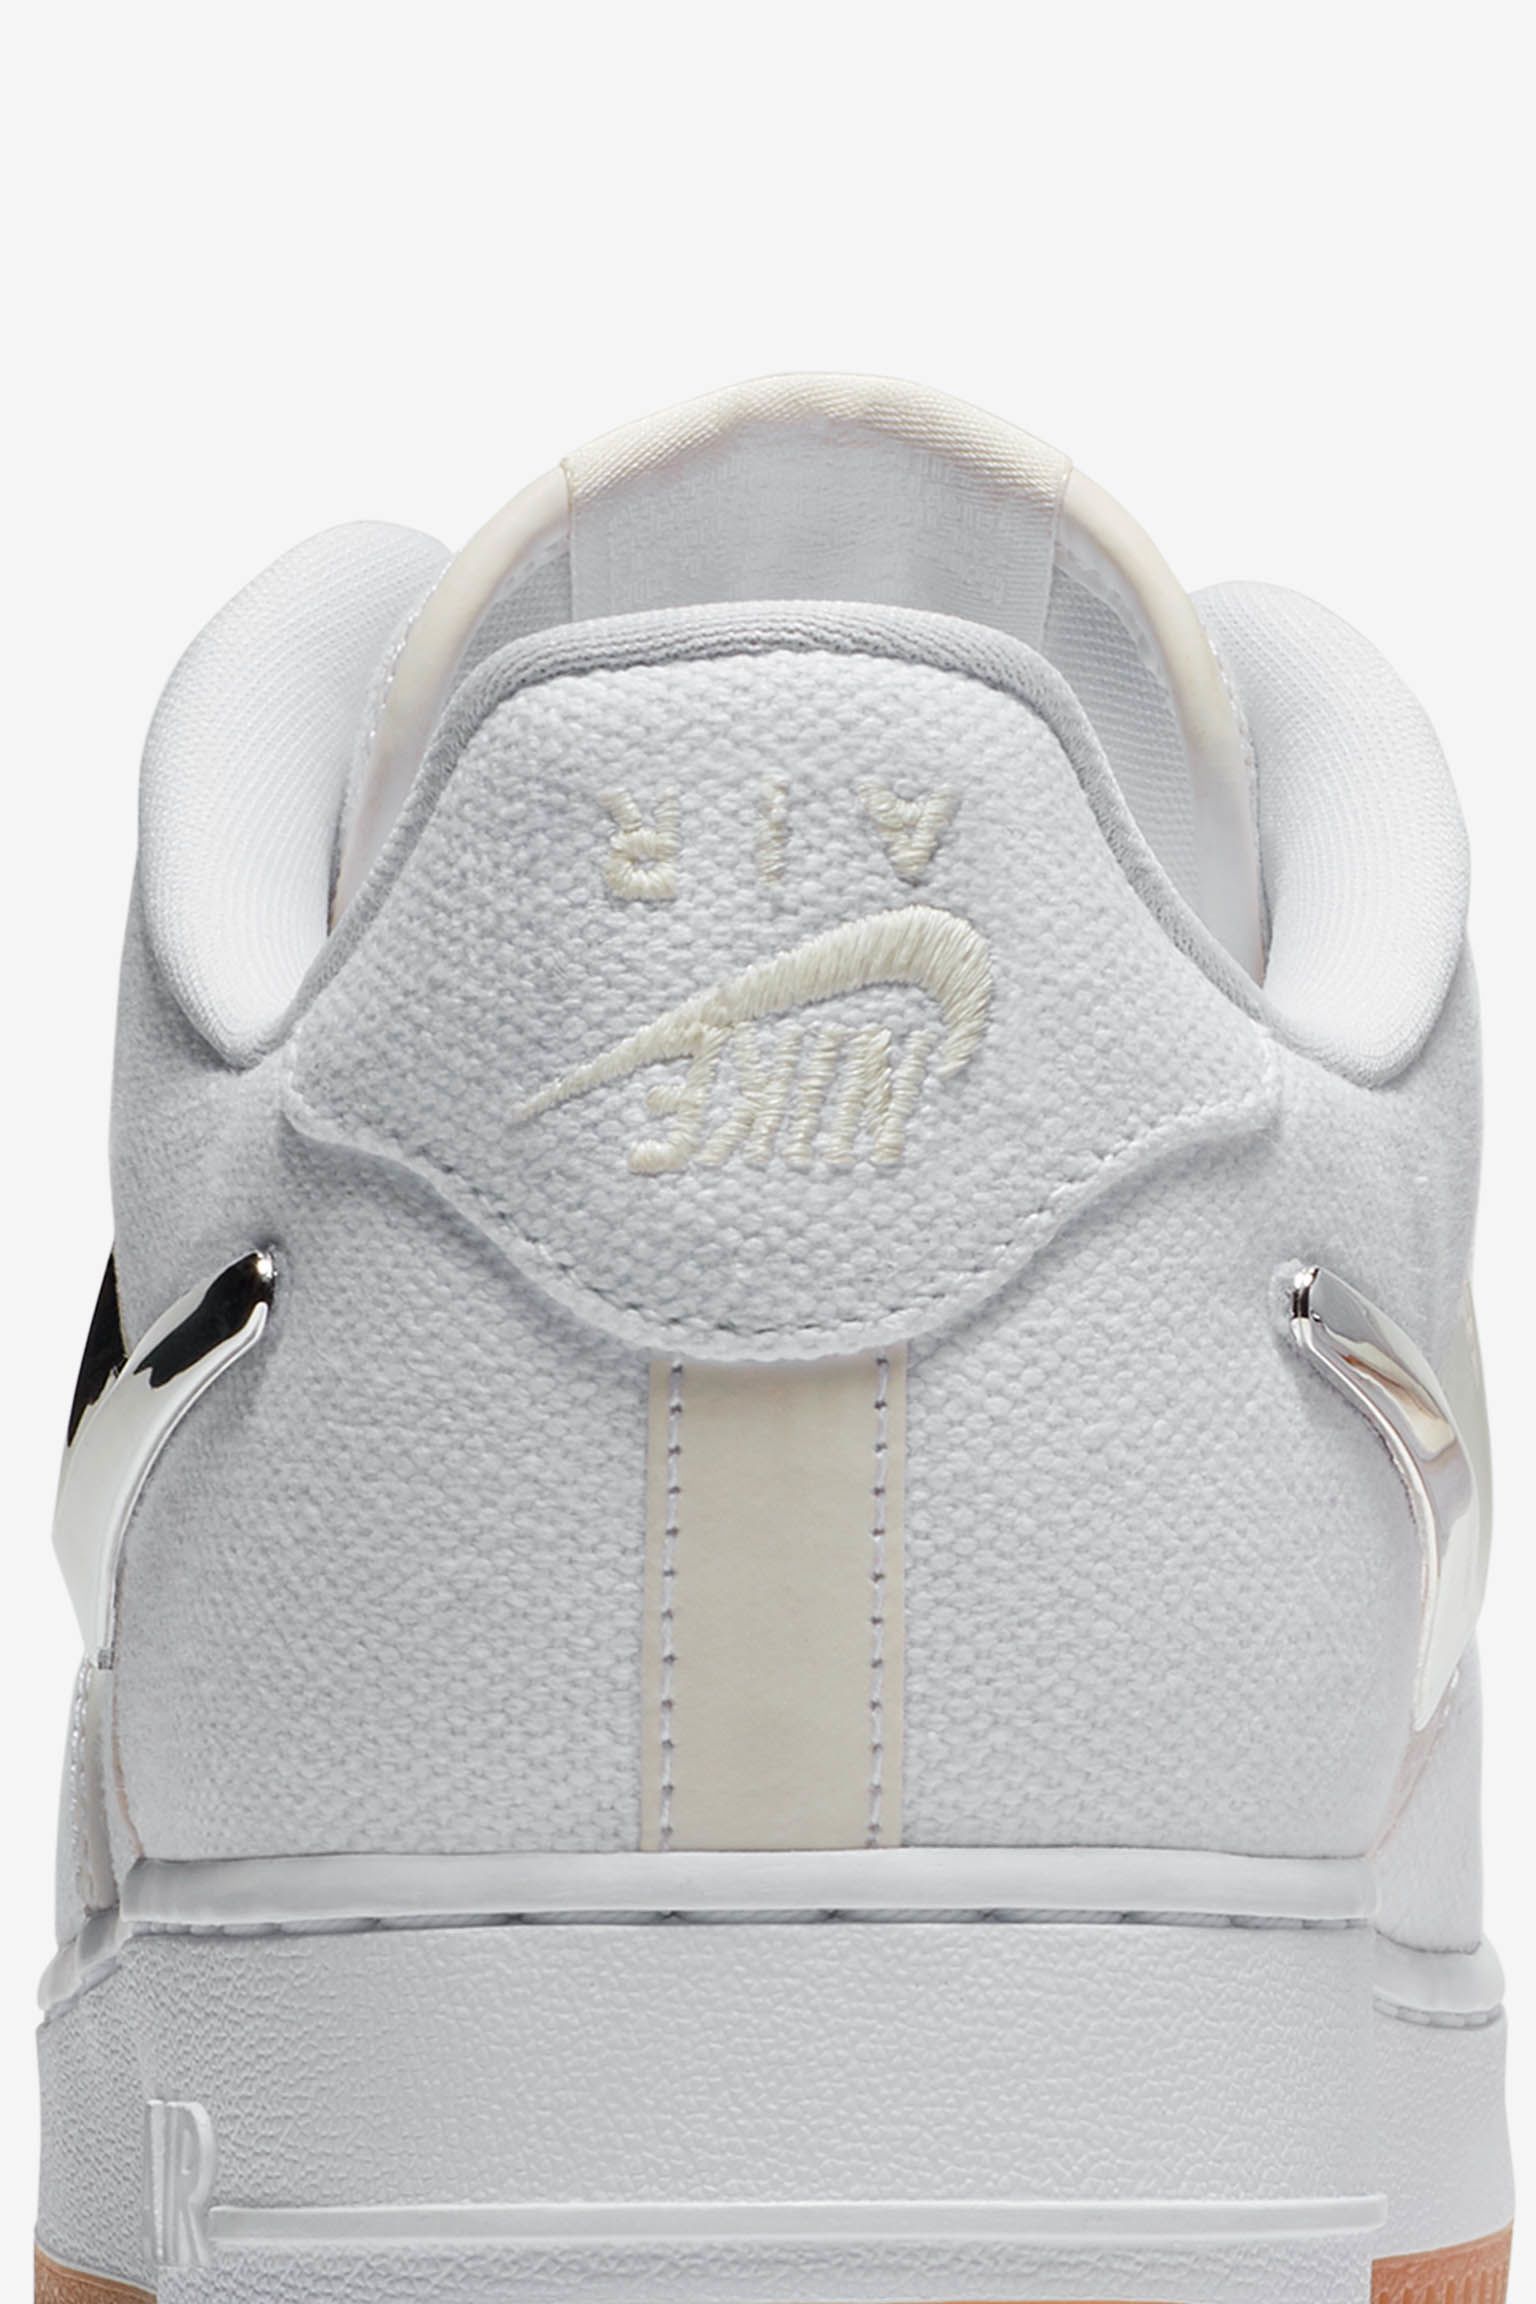 cristiandad bufanda Capilla Fecha de lanzamiento de las Nike Air Force 1 "Travis Scott". Nike SNKRS ES